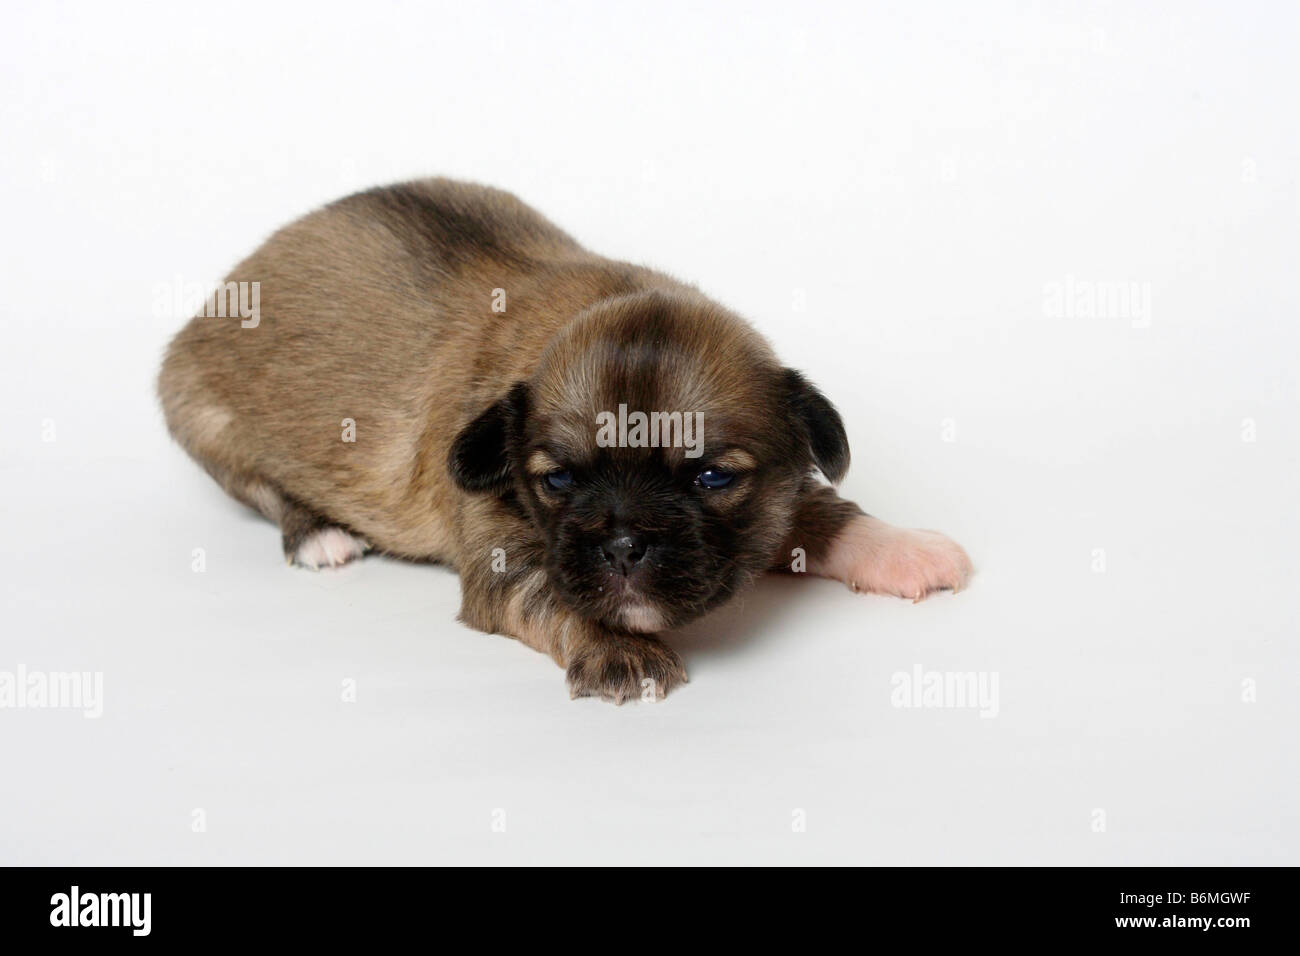 Tibetan Spaniel puppy 14 days Stock Photo